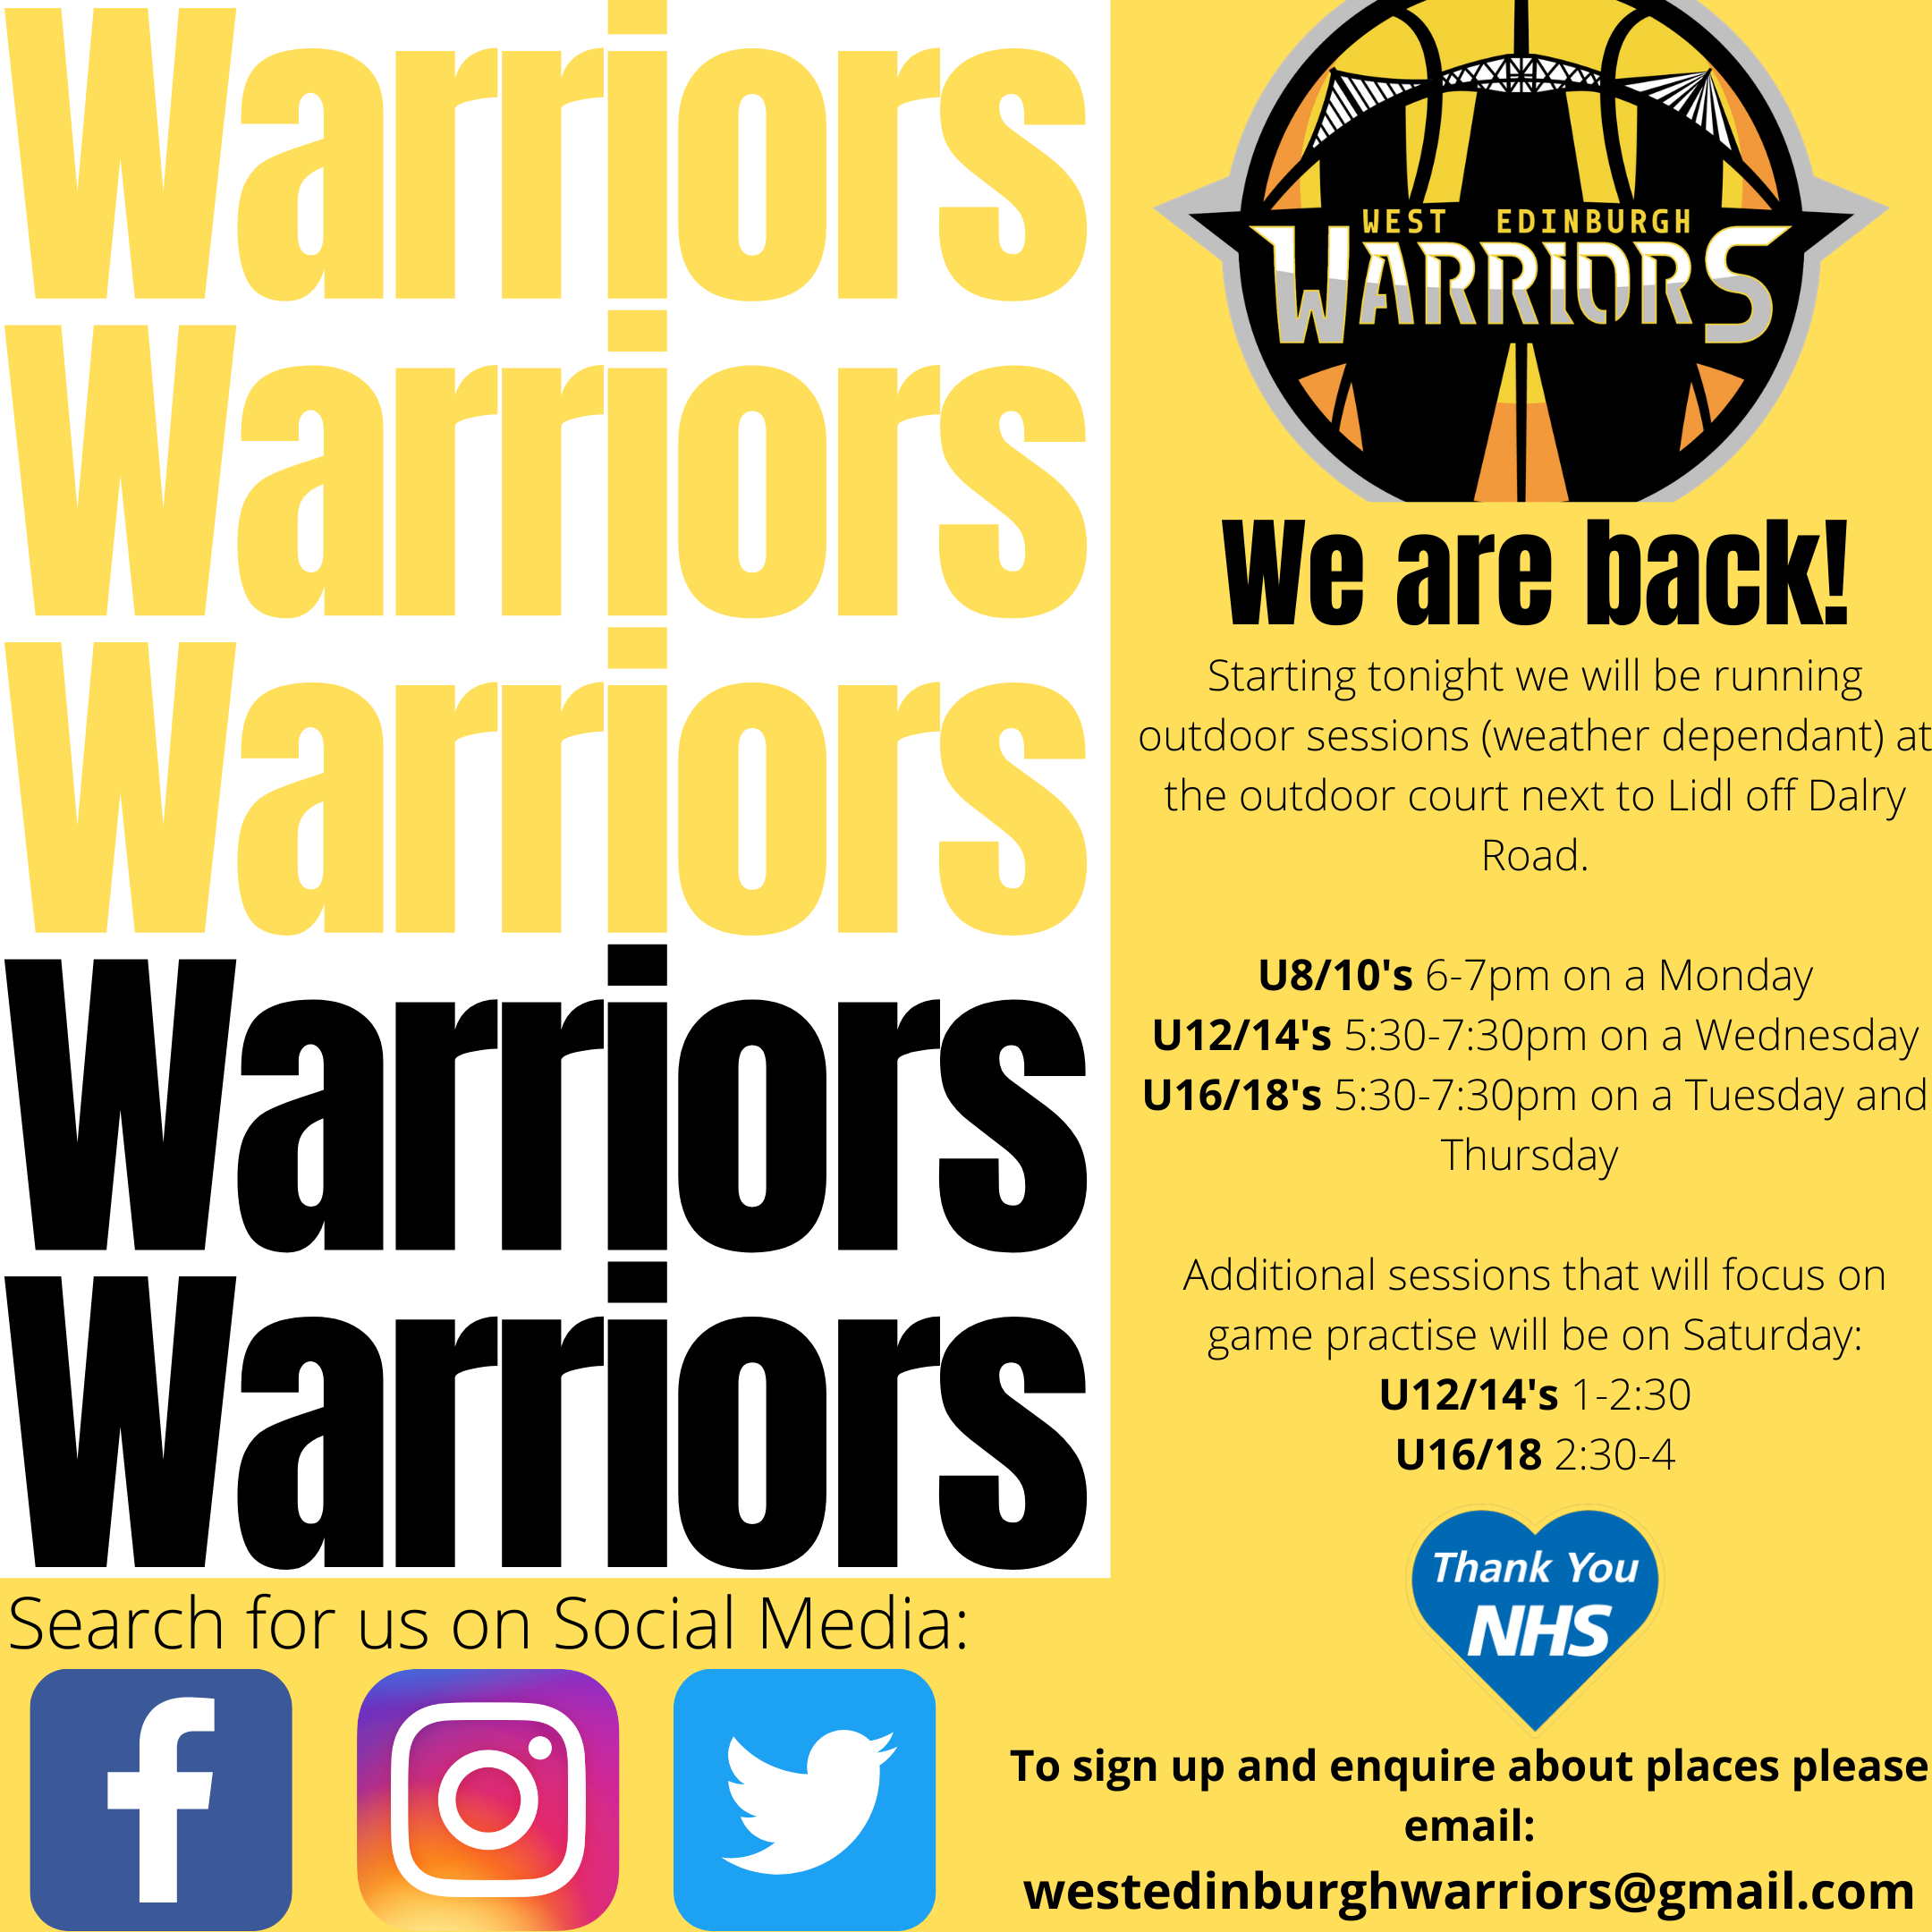 Warriors Warriors Warriors Warriors Warriors Warriors Warriors